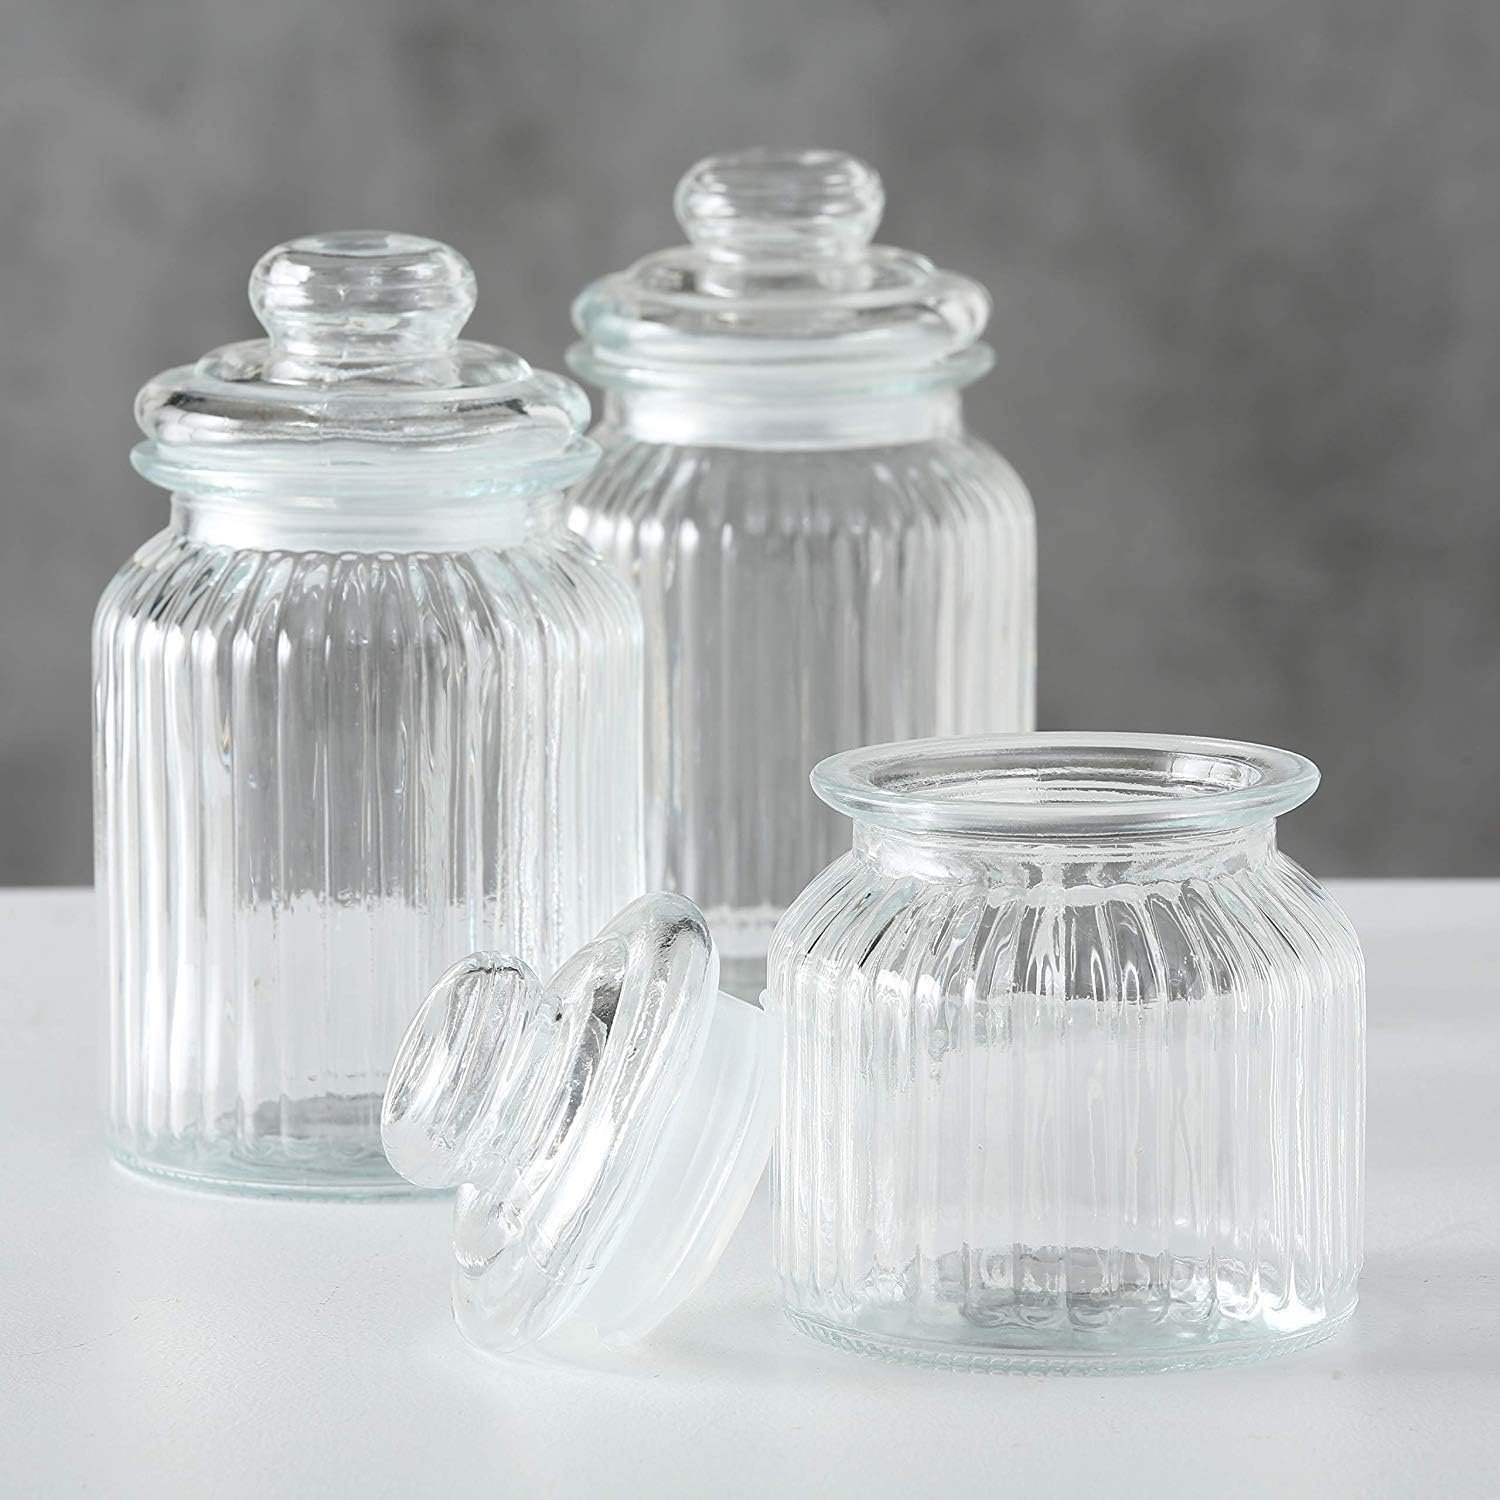 Glass Jar Lined Design - Lunaz Shop